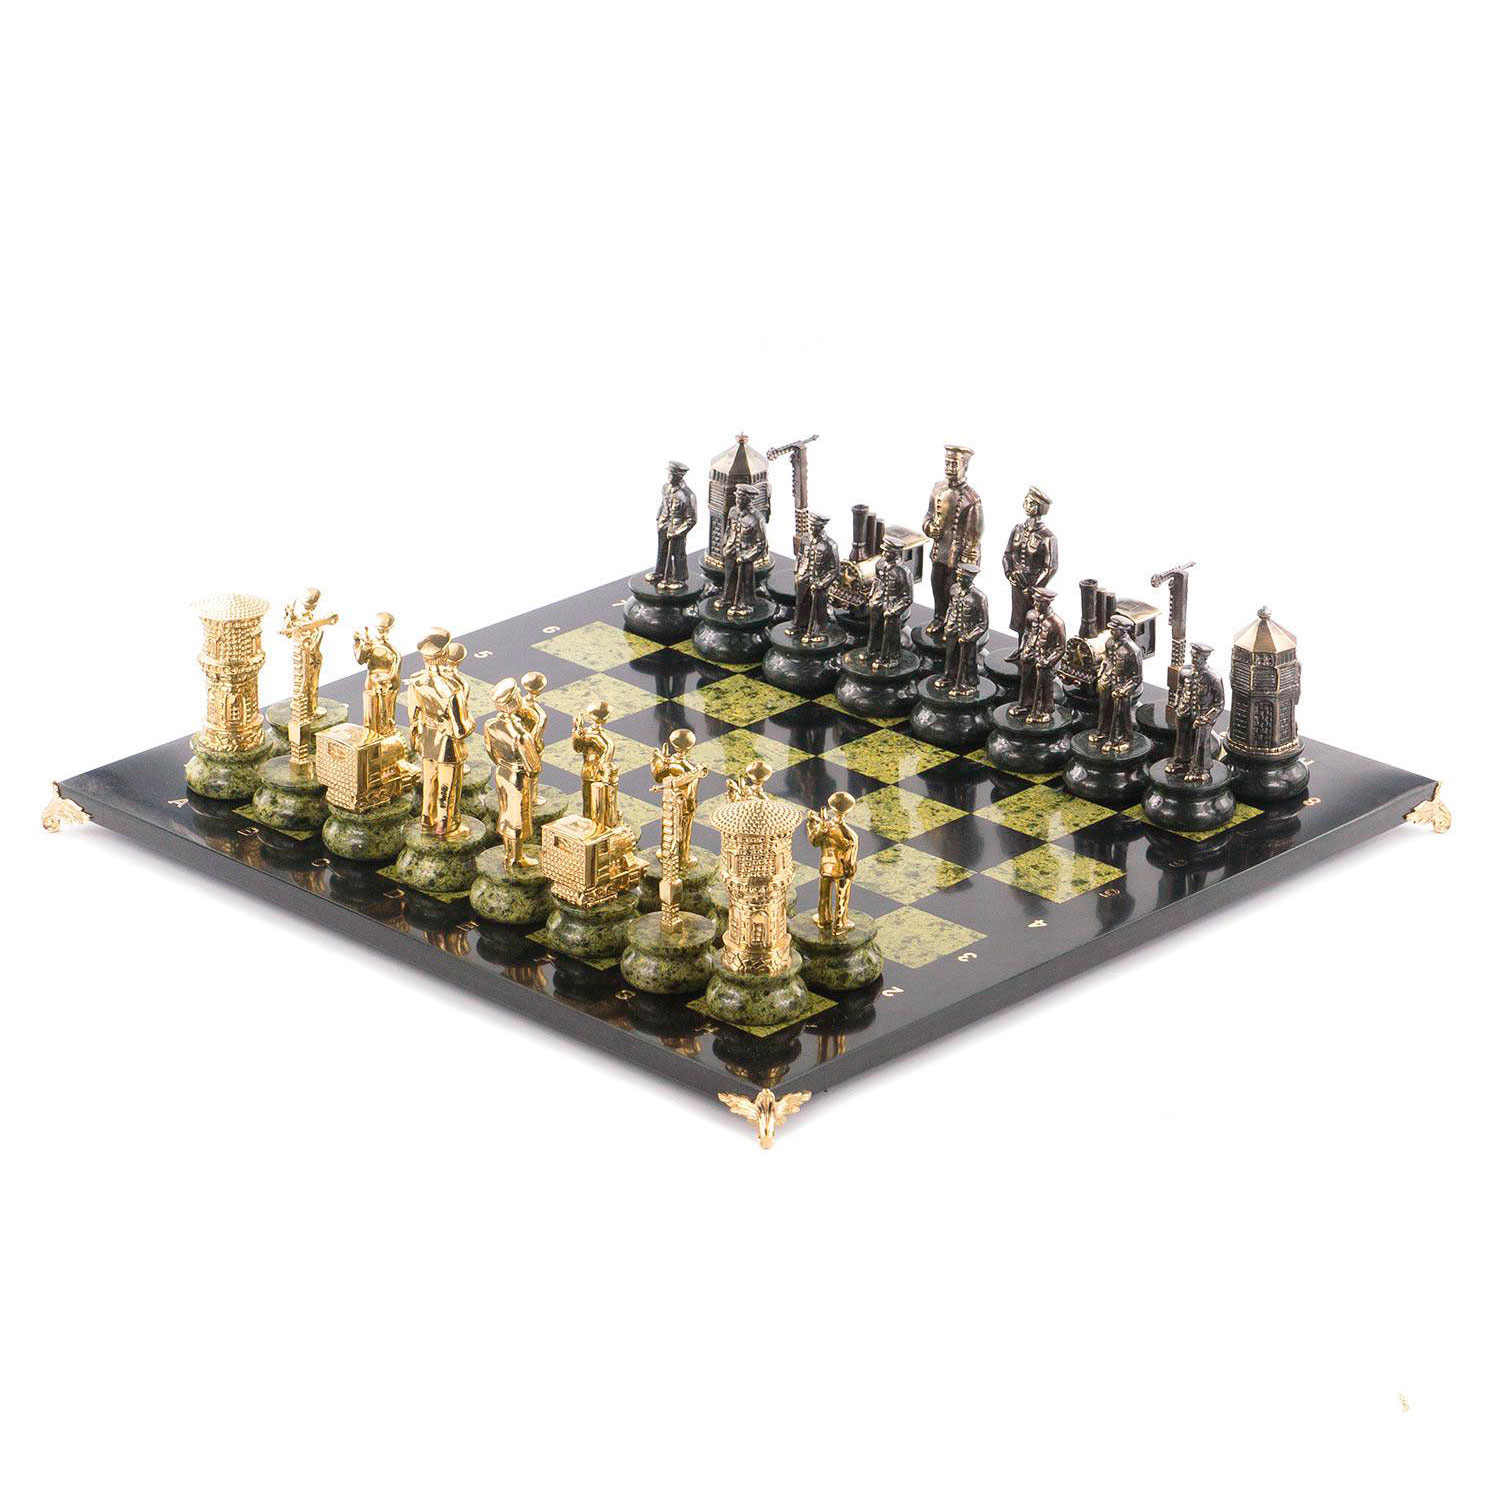 Шахматы "Железнодорожники" - артикул: 16656 | Мосподарок 